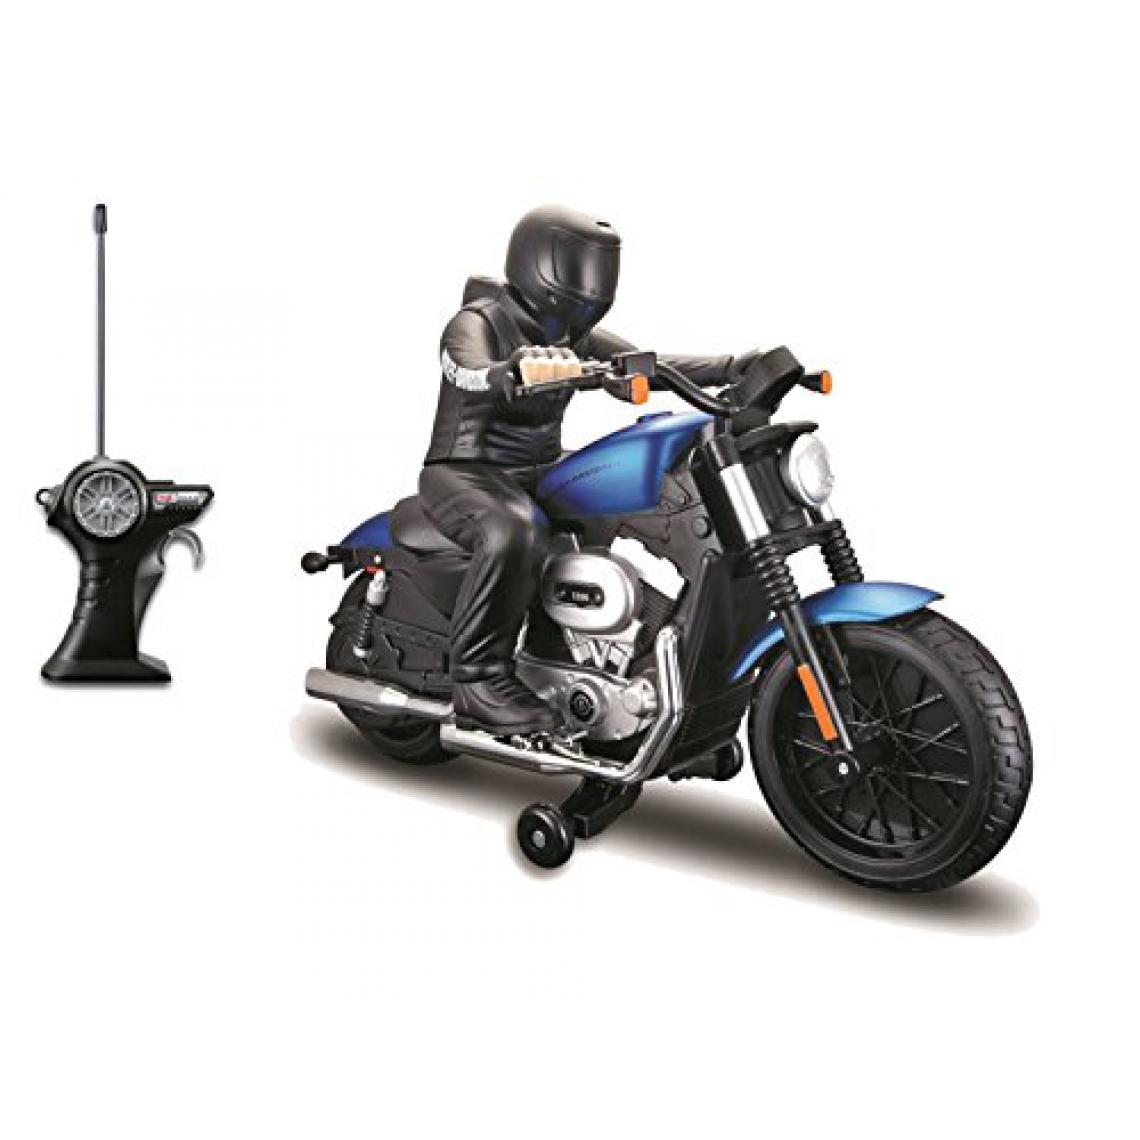 Maisto - Maisto R / c Harley Davidson XL 1200N Nightster avec véhicule radiocommandé (les couleurs peuvent varier) - Jouet électronique enfant